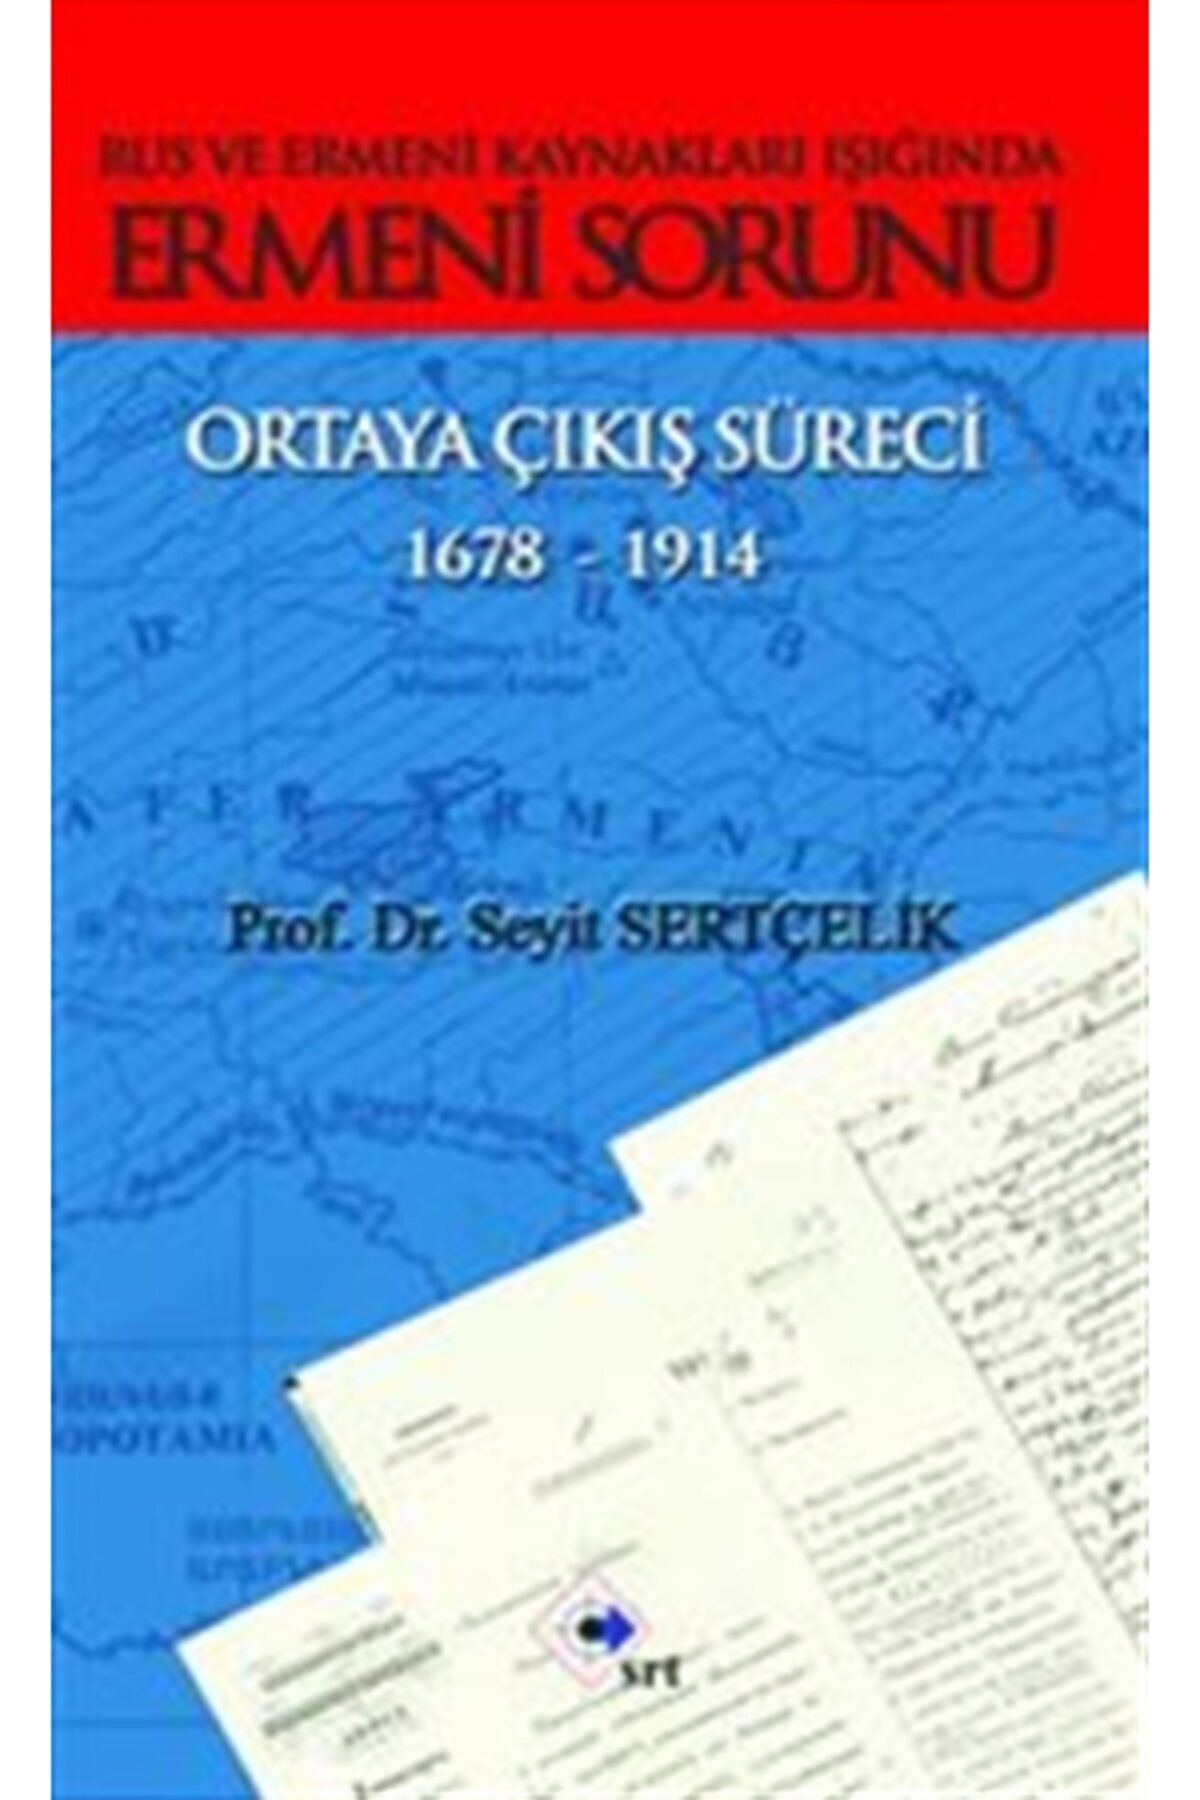 Profil Kitap Rus Ve Ermeni Kaynakları Işığında Ermeni Sorunu Ortaya Çıkış Süreci 1678-1914